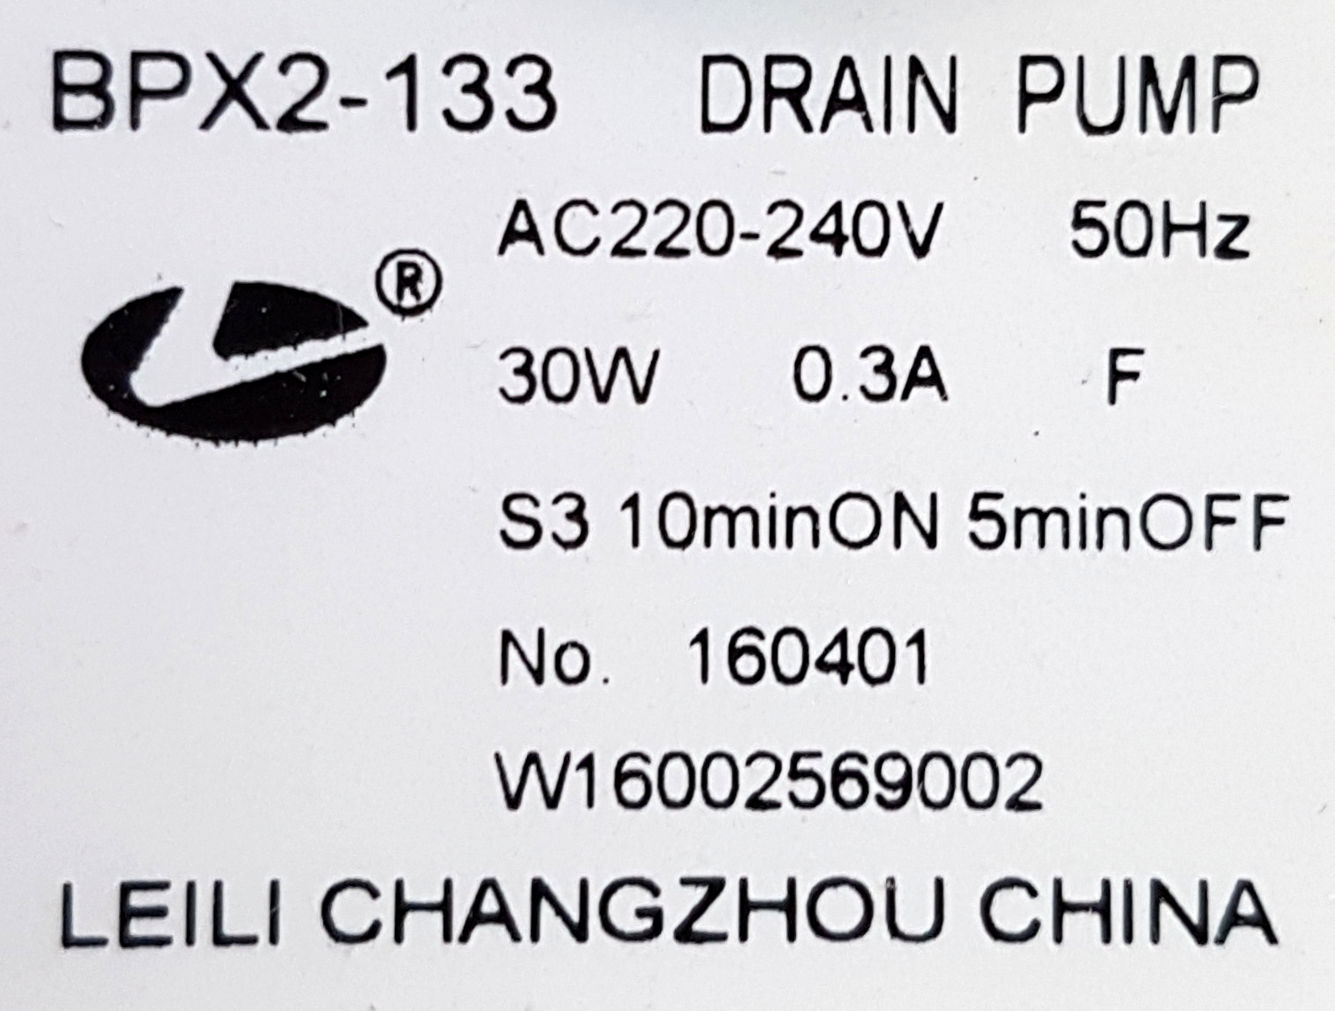 drain pump bpx2 133